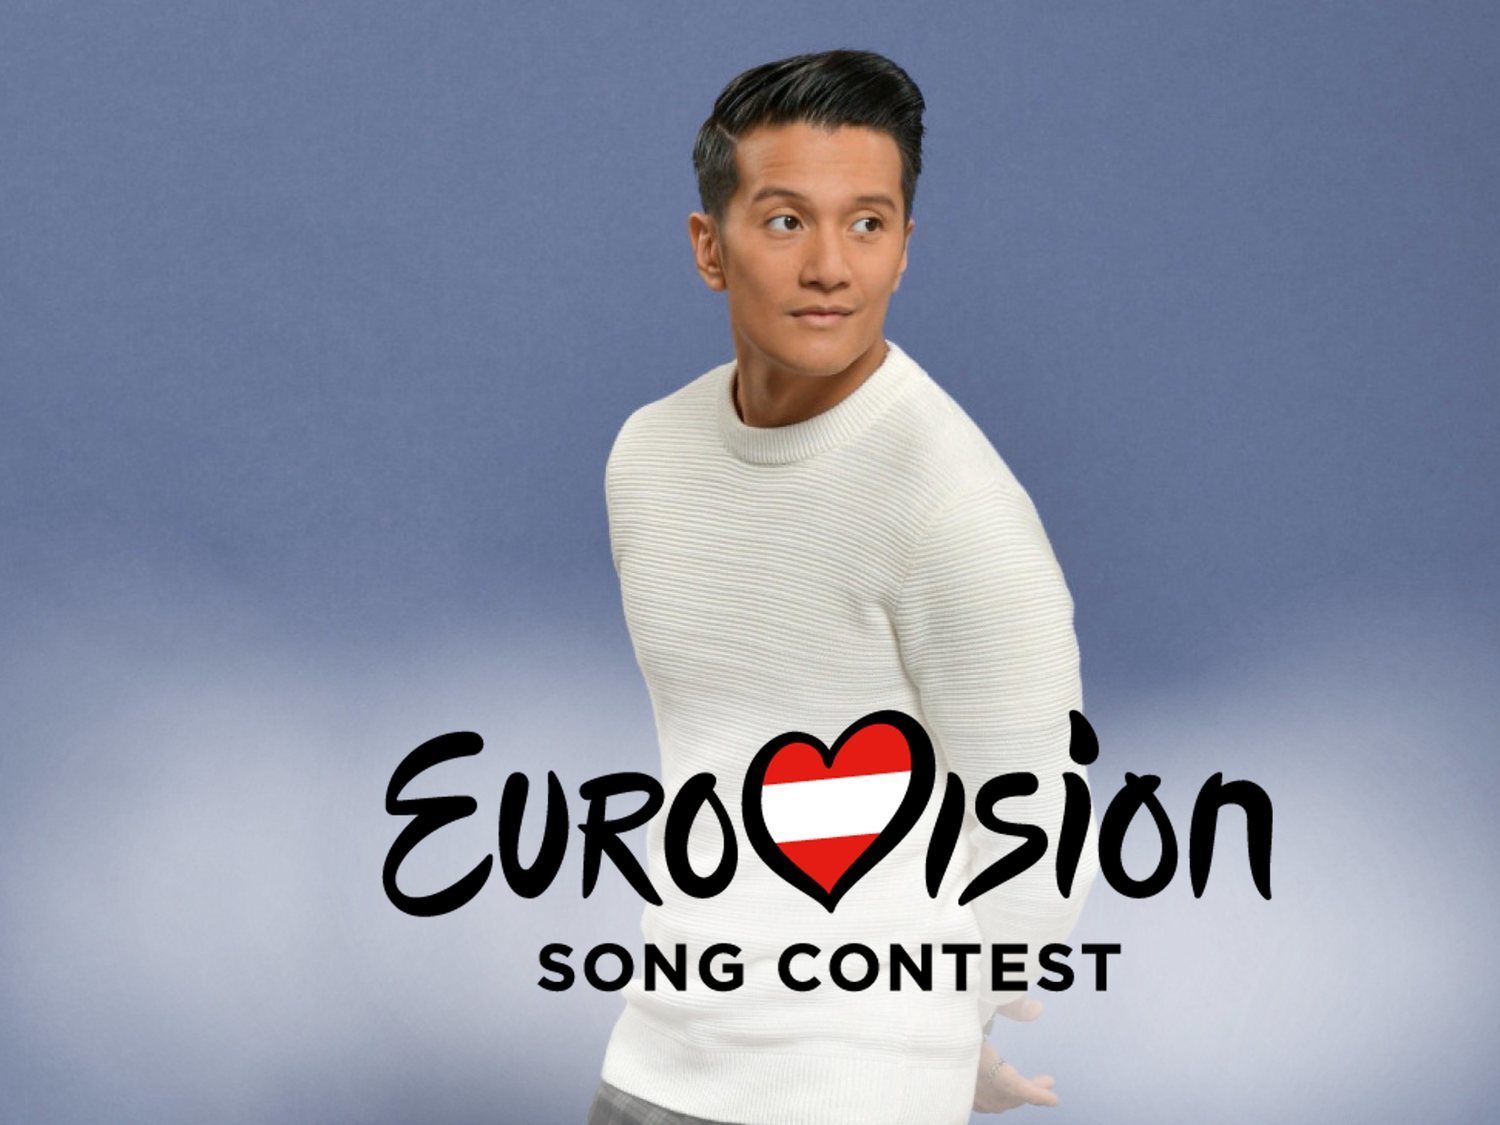 Austria escoge a Vincent Bueno como representante para Eurovisión 2020